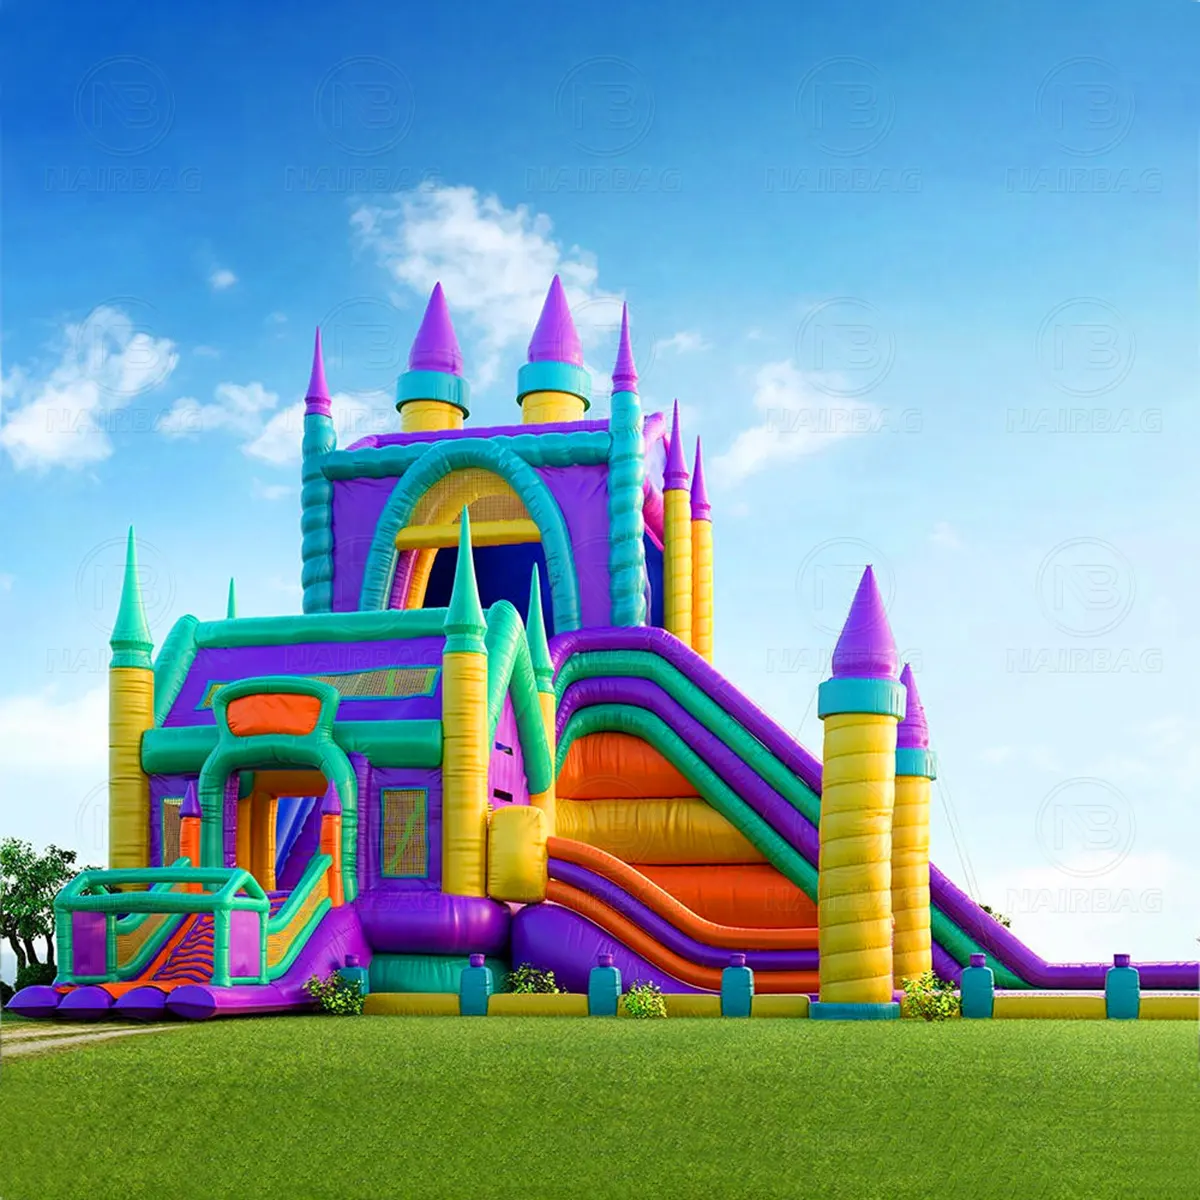 Grand château sautant Combo parc à thème gonflable géant aire de jeux maison de rebond grand château gonflable pour enfants et adultes